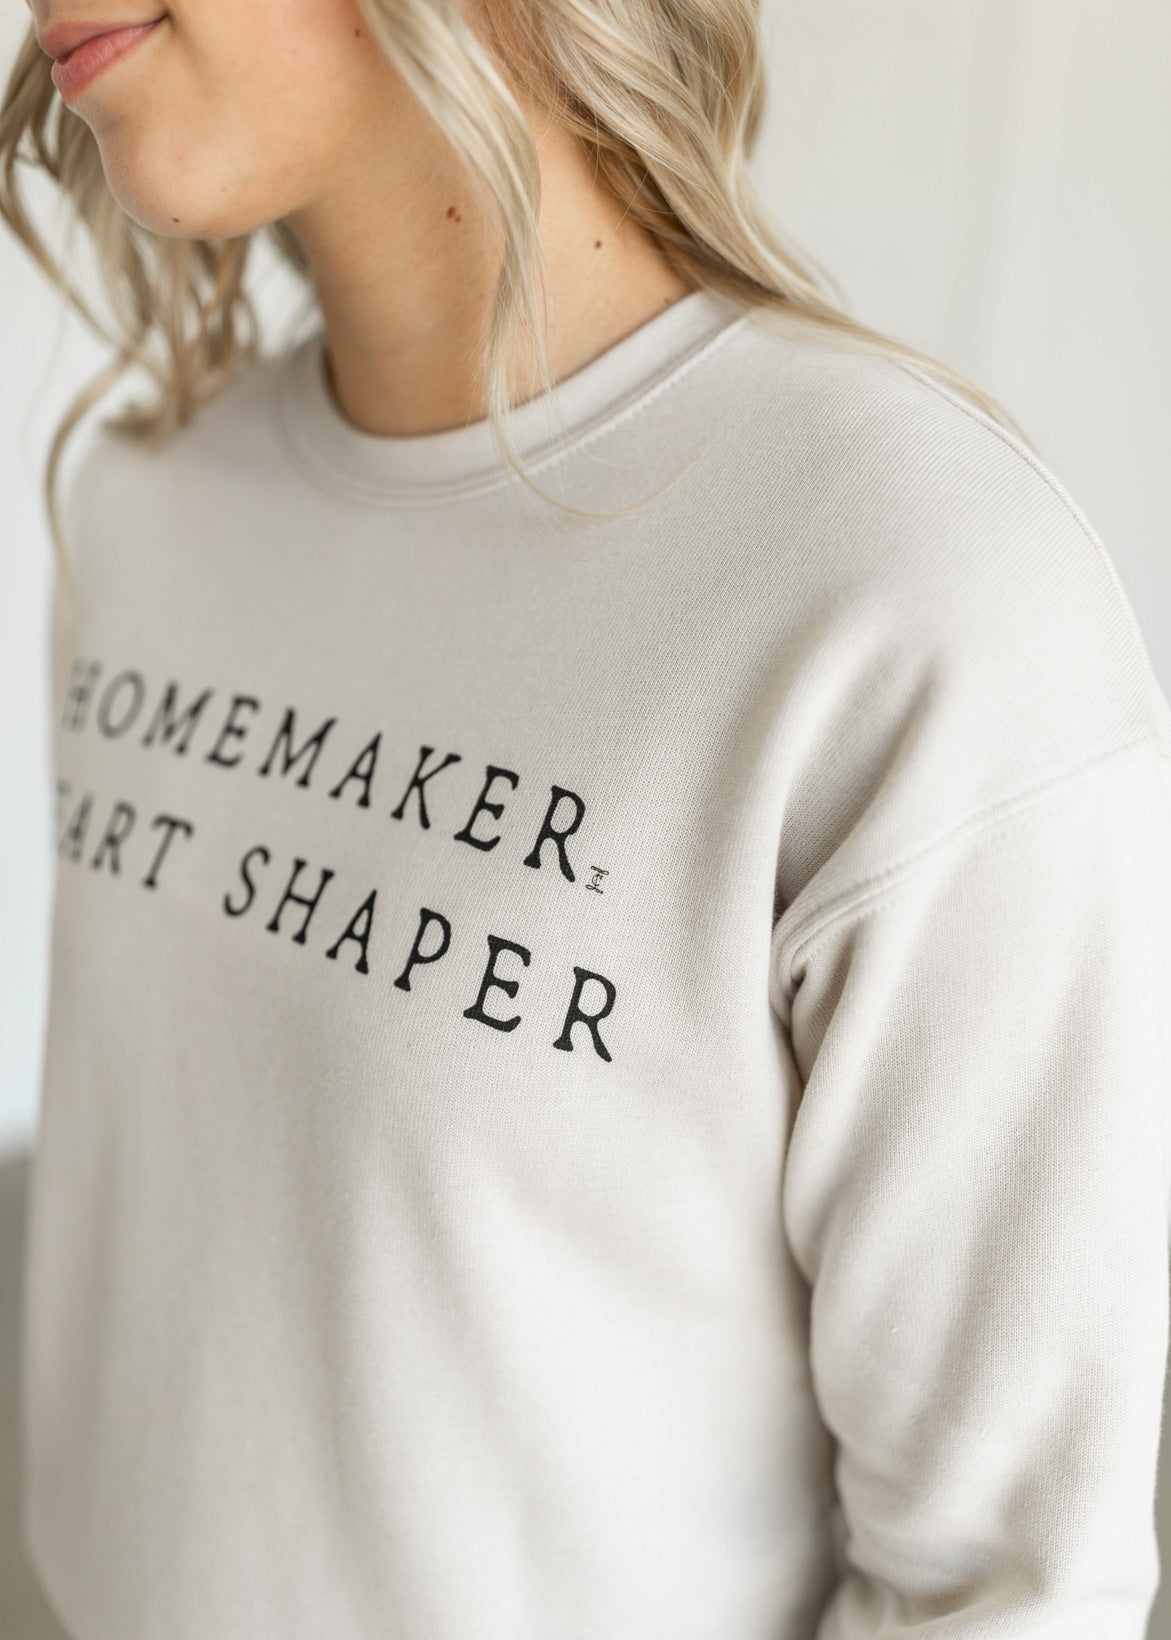 Homemaker Crewneck Sweatshirt Tops